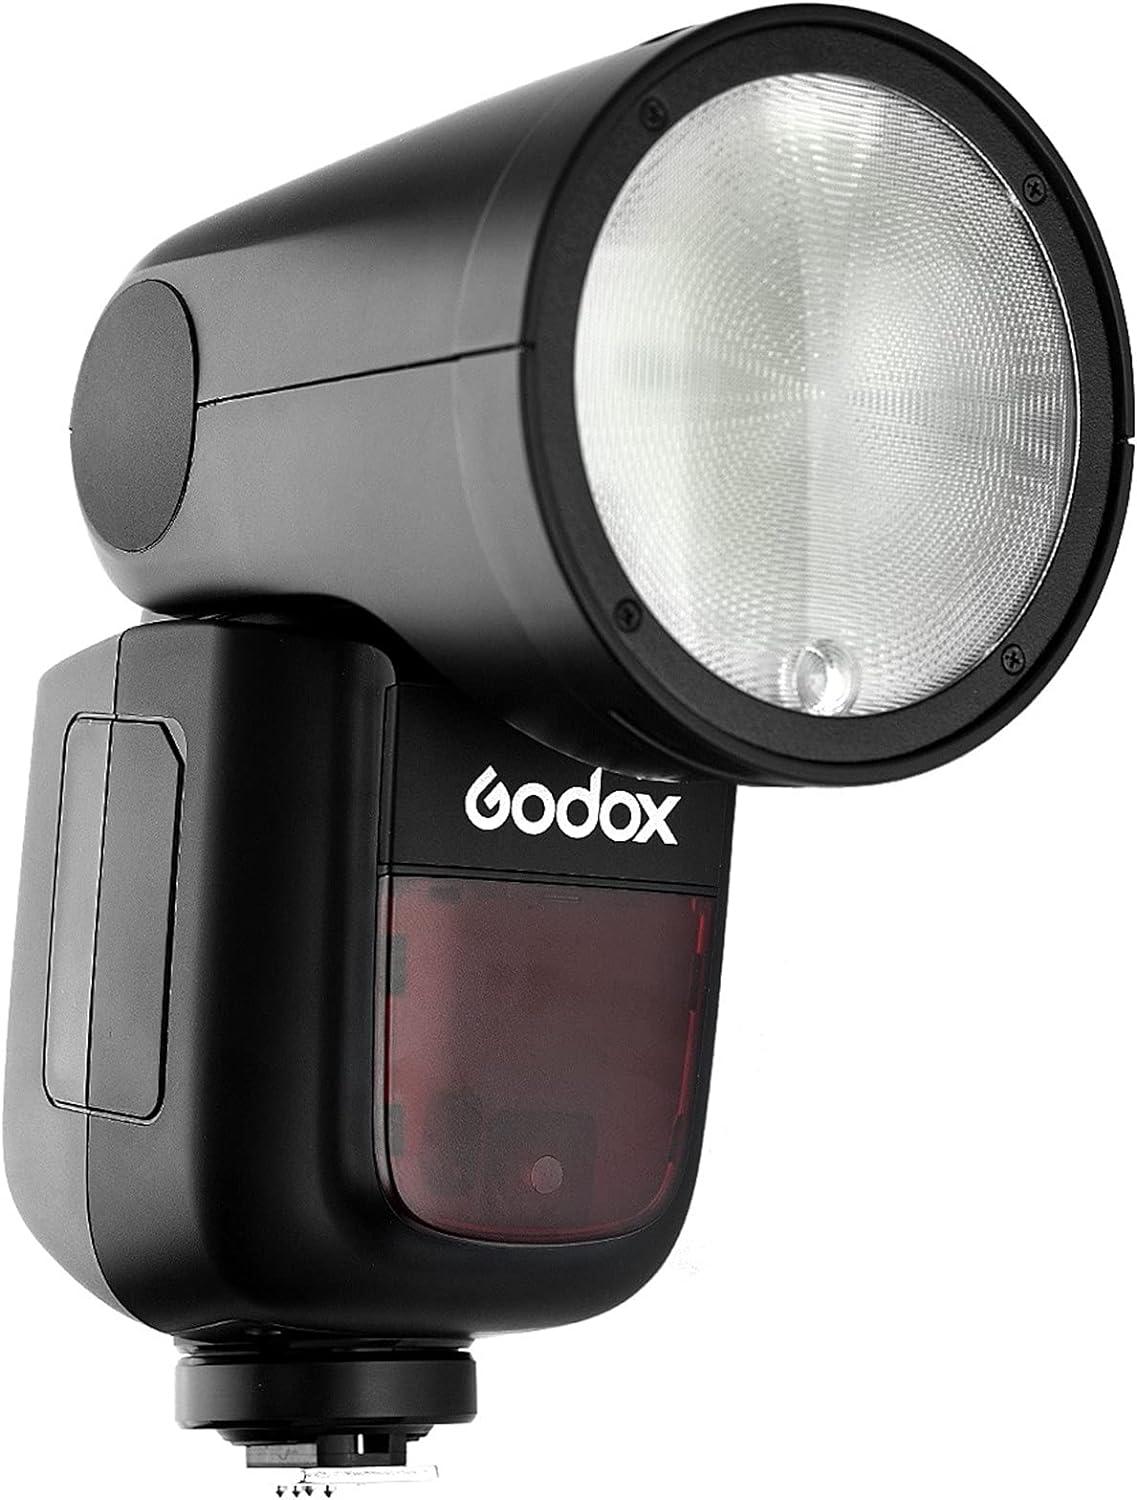 Godox V1-C Godox Flash Speedlight Round Head Camera Speedlite 2.4